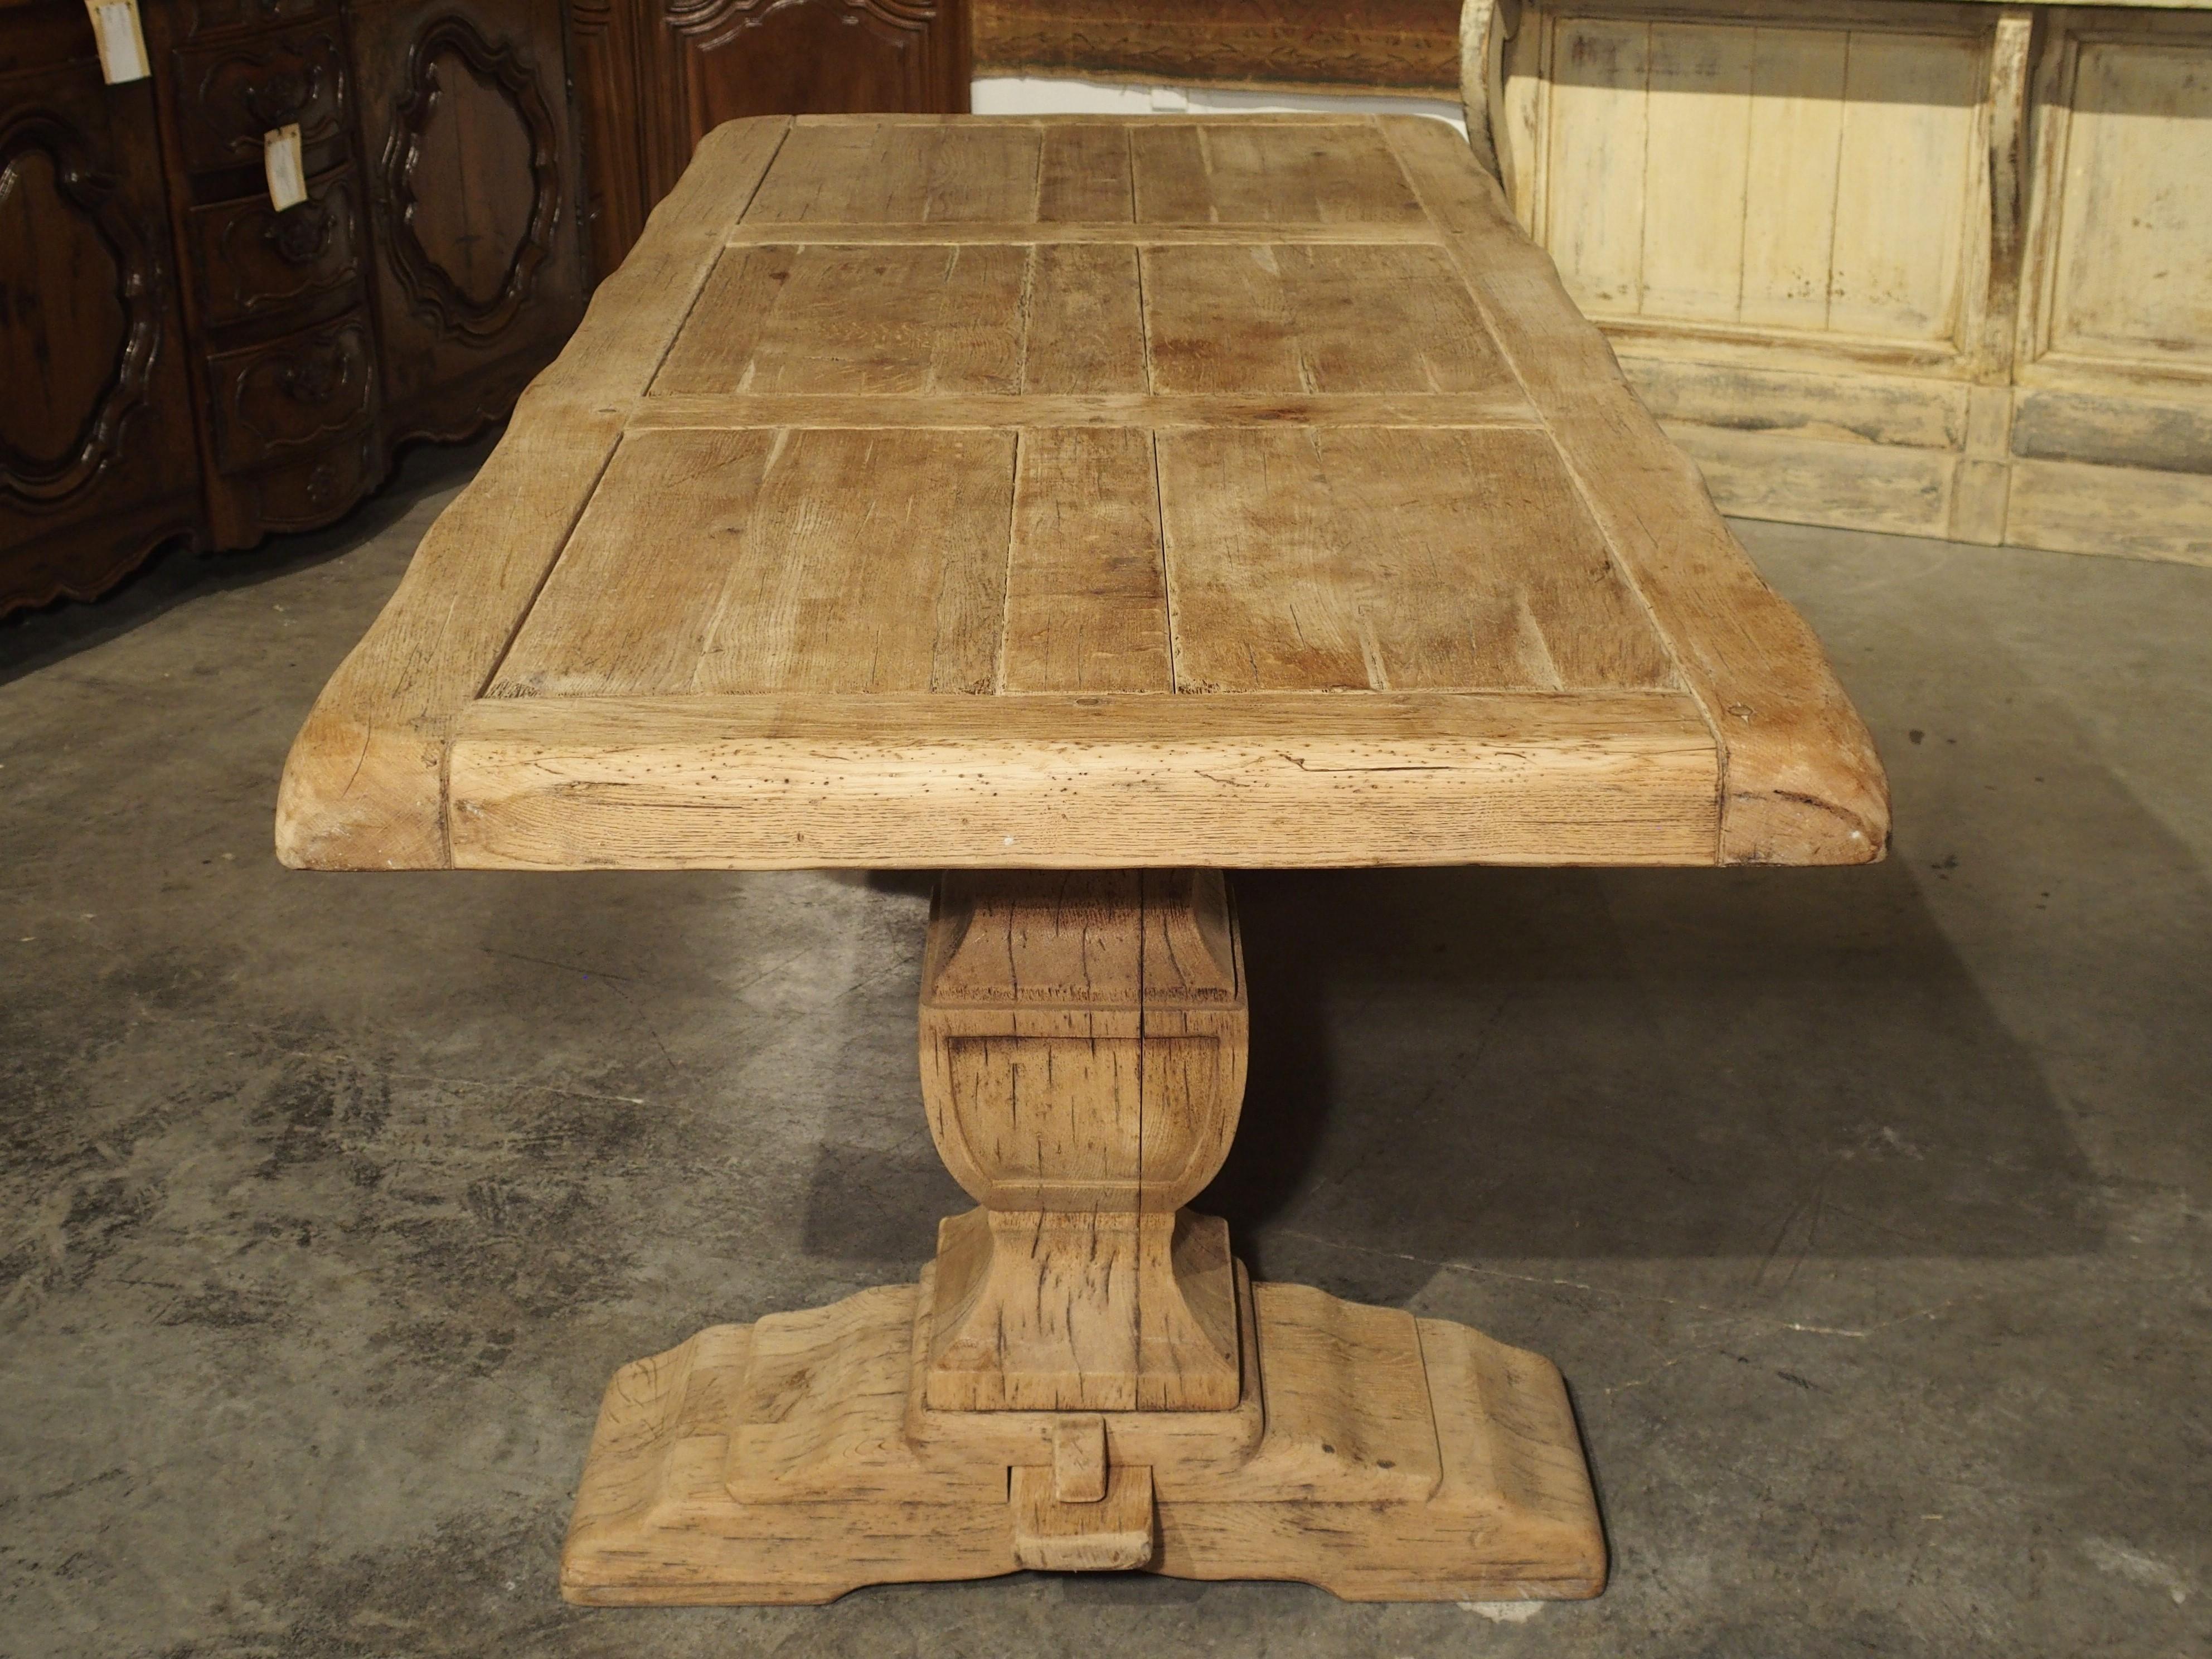 stripped oak table